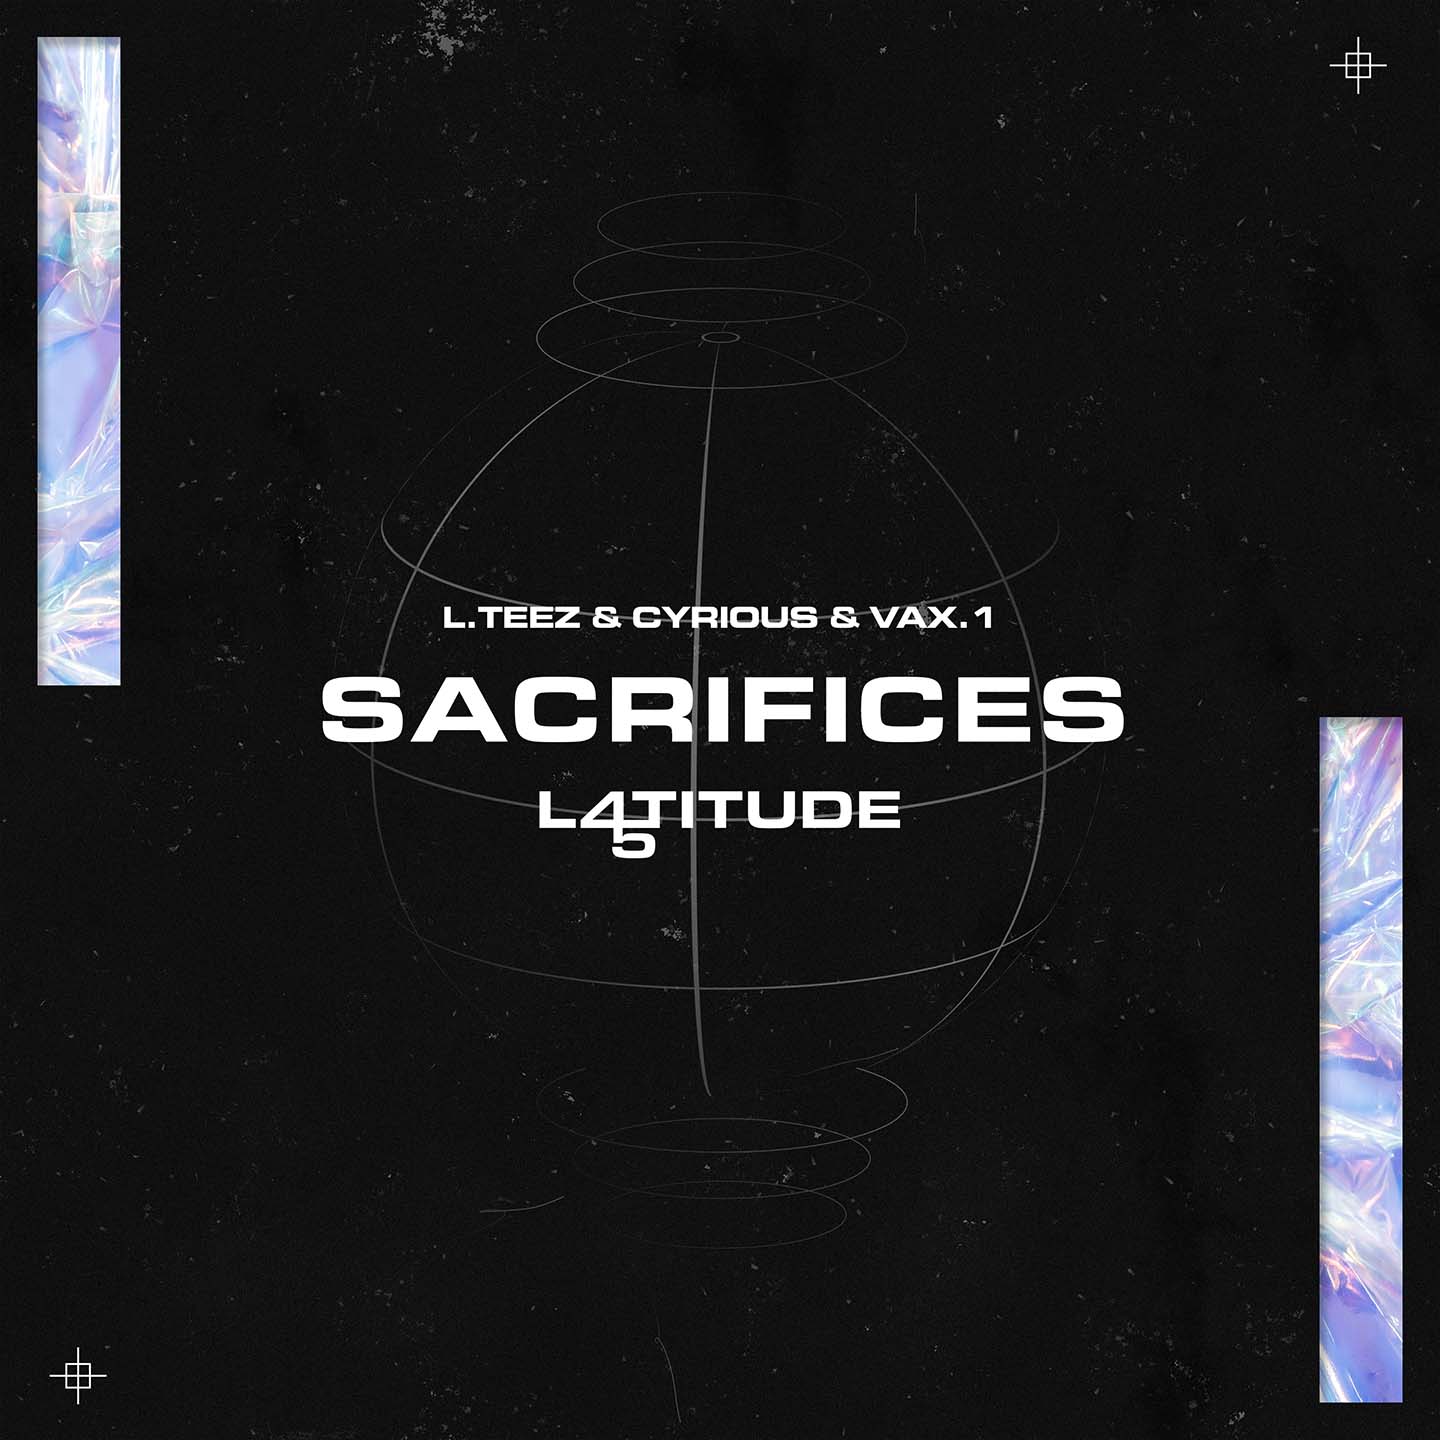 Sacrifices, premier single de Latitude 45 !